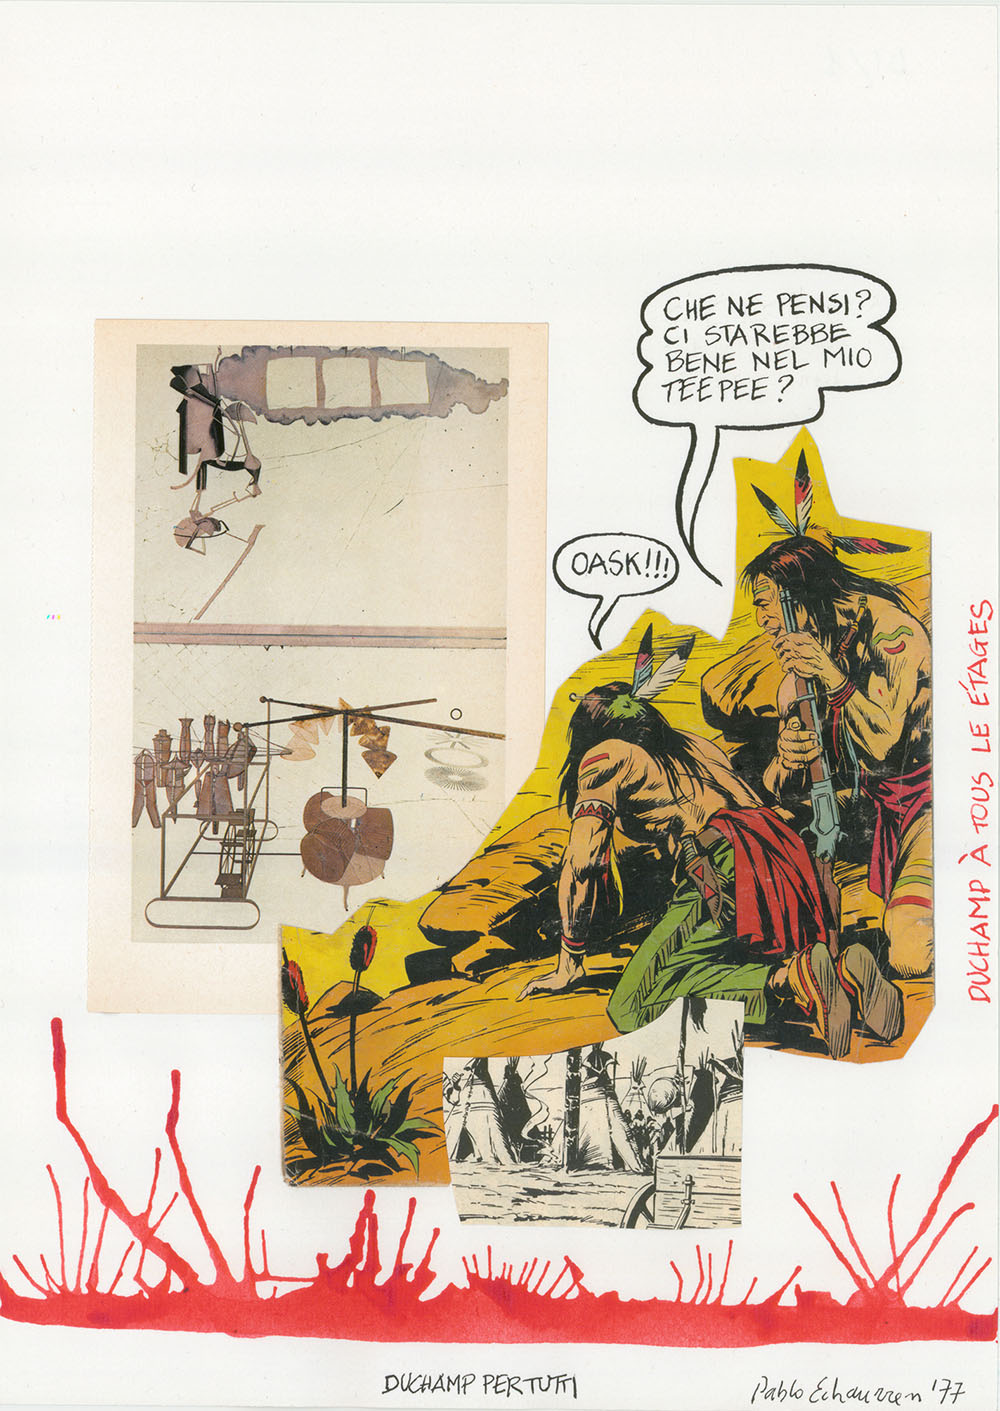 Duchamp per tutti, 1977, china e collage su carta, 34 x 24 cm